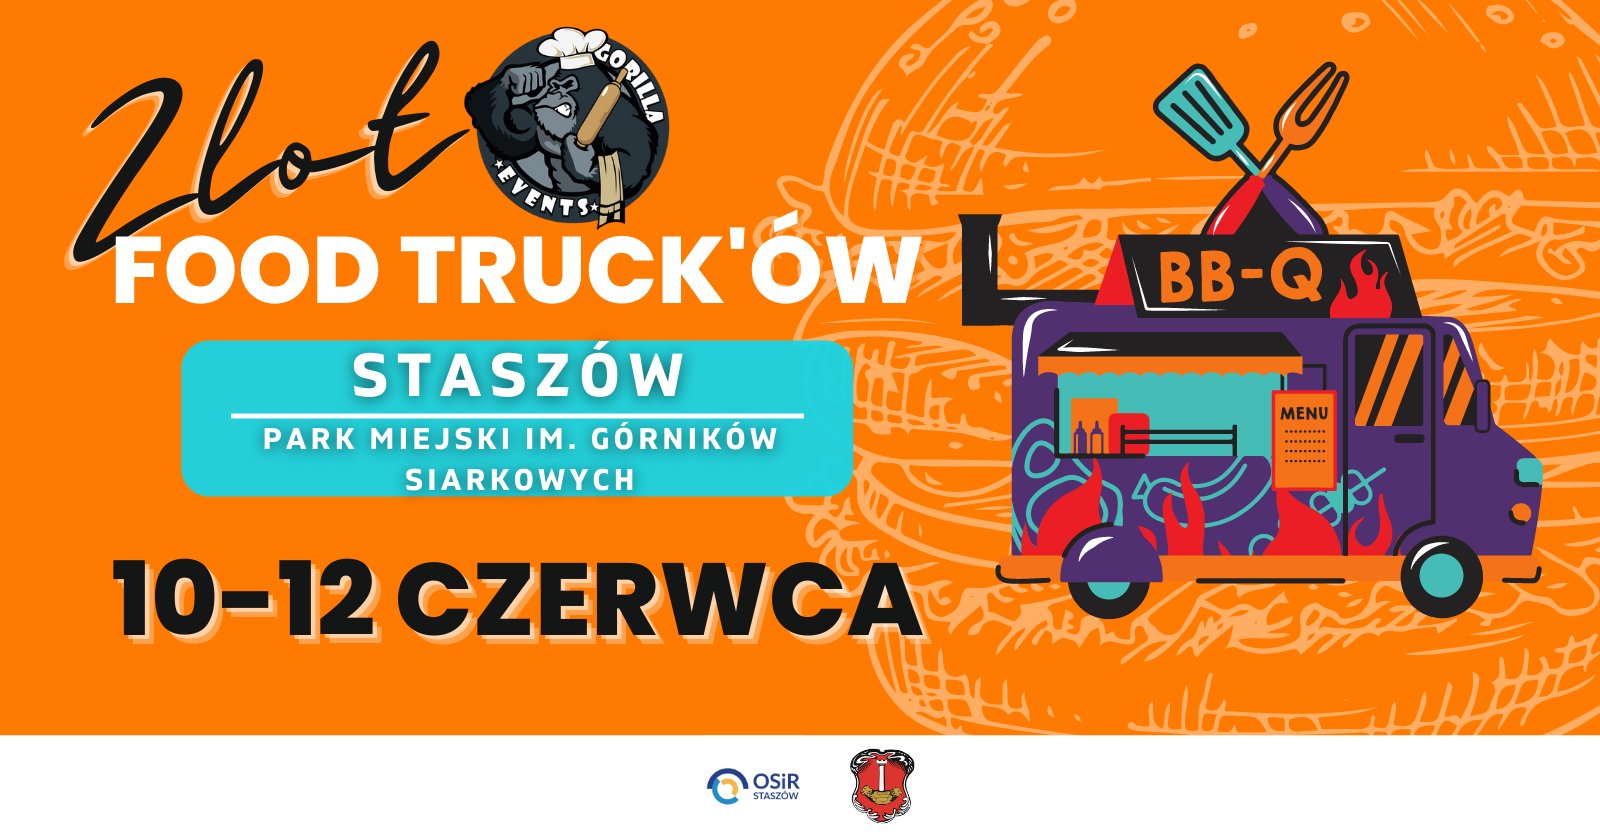 Grafika informacyjna: Zlot Food Trucków w Staszowie   10-12 czerwca, Park Miejski im. Górników Siarkowych